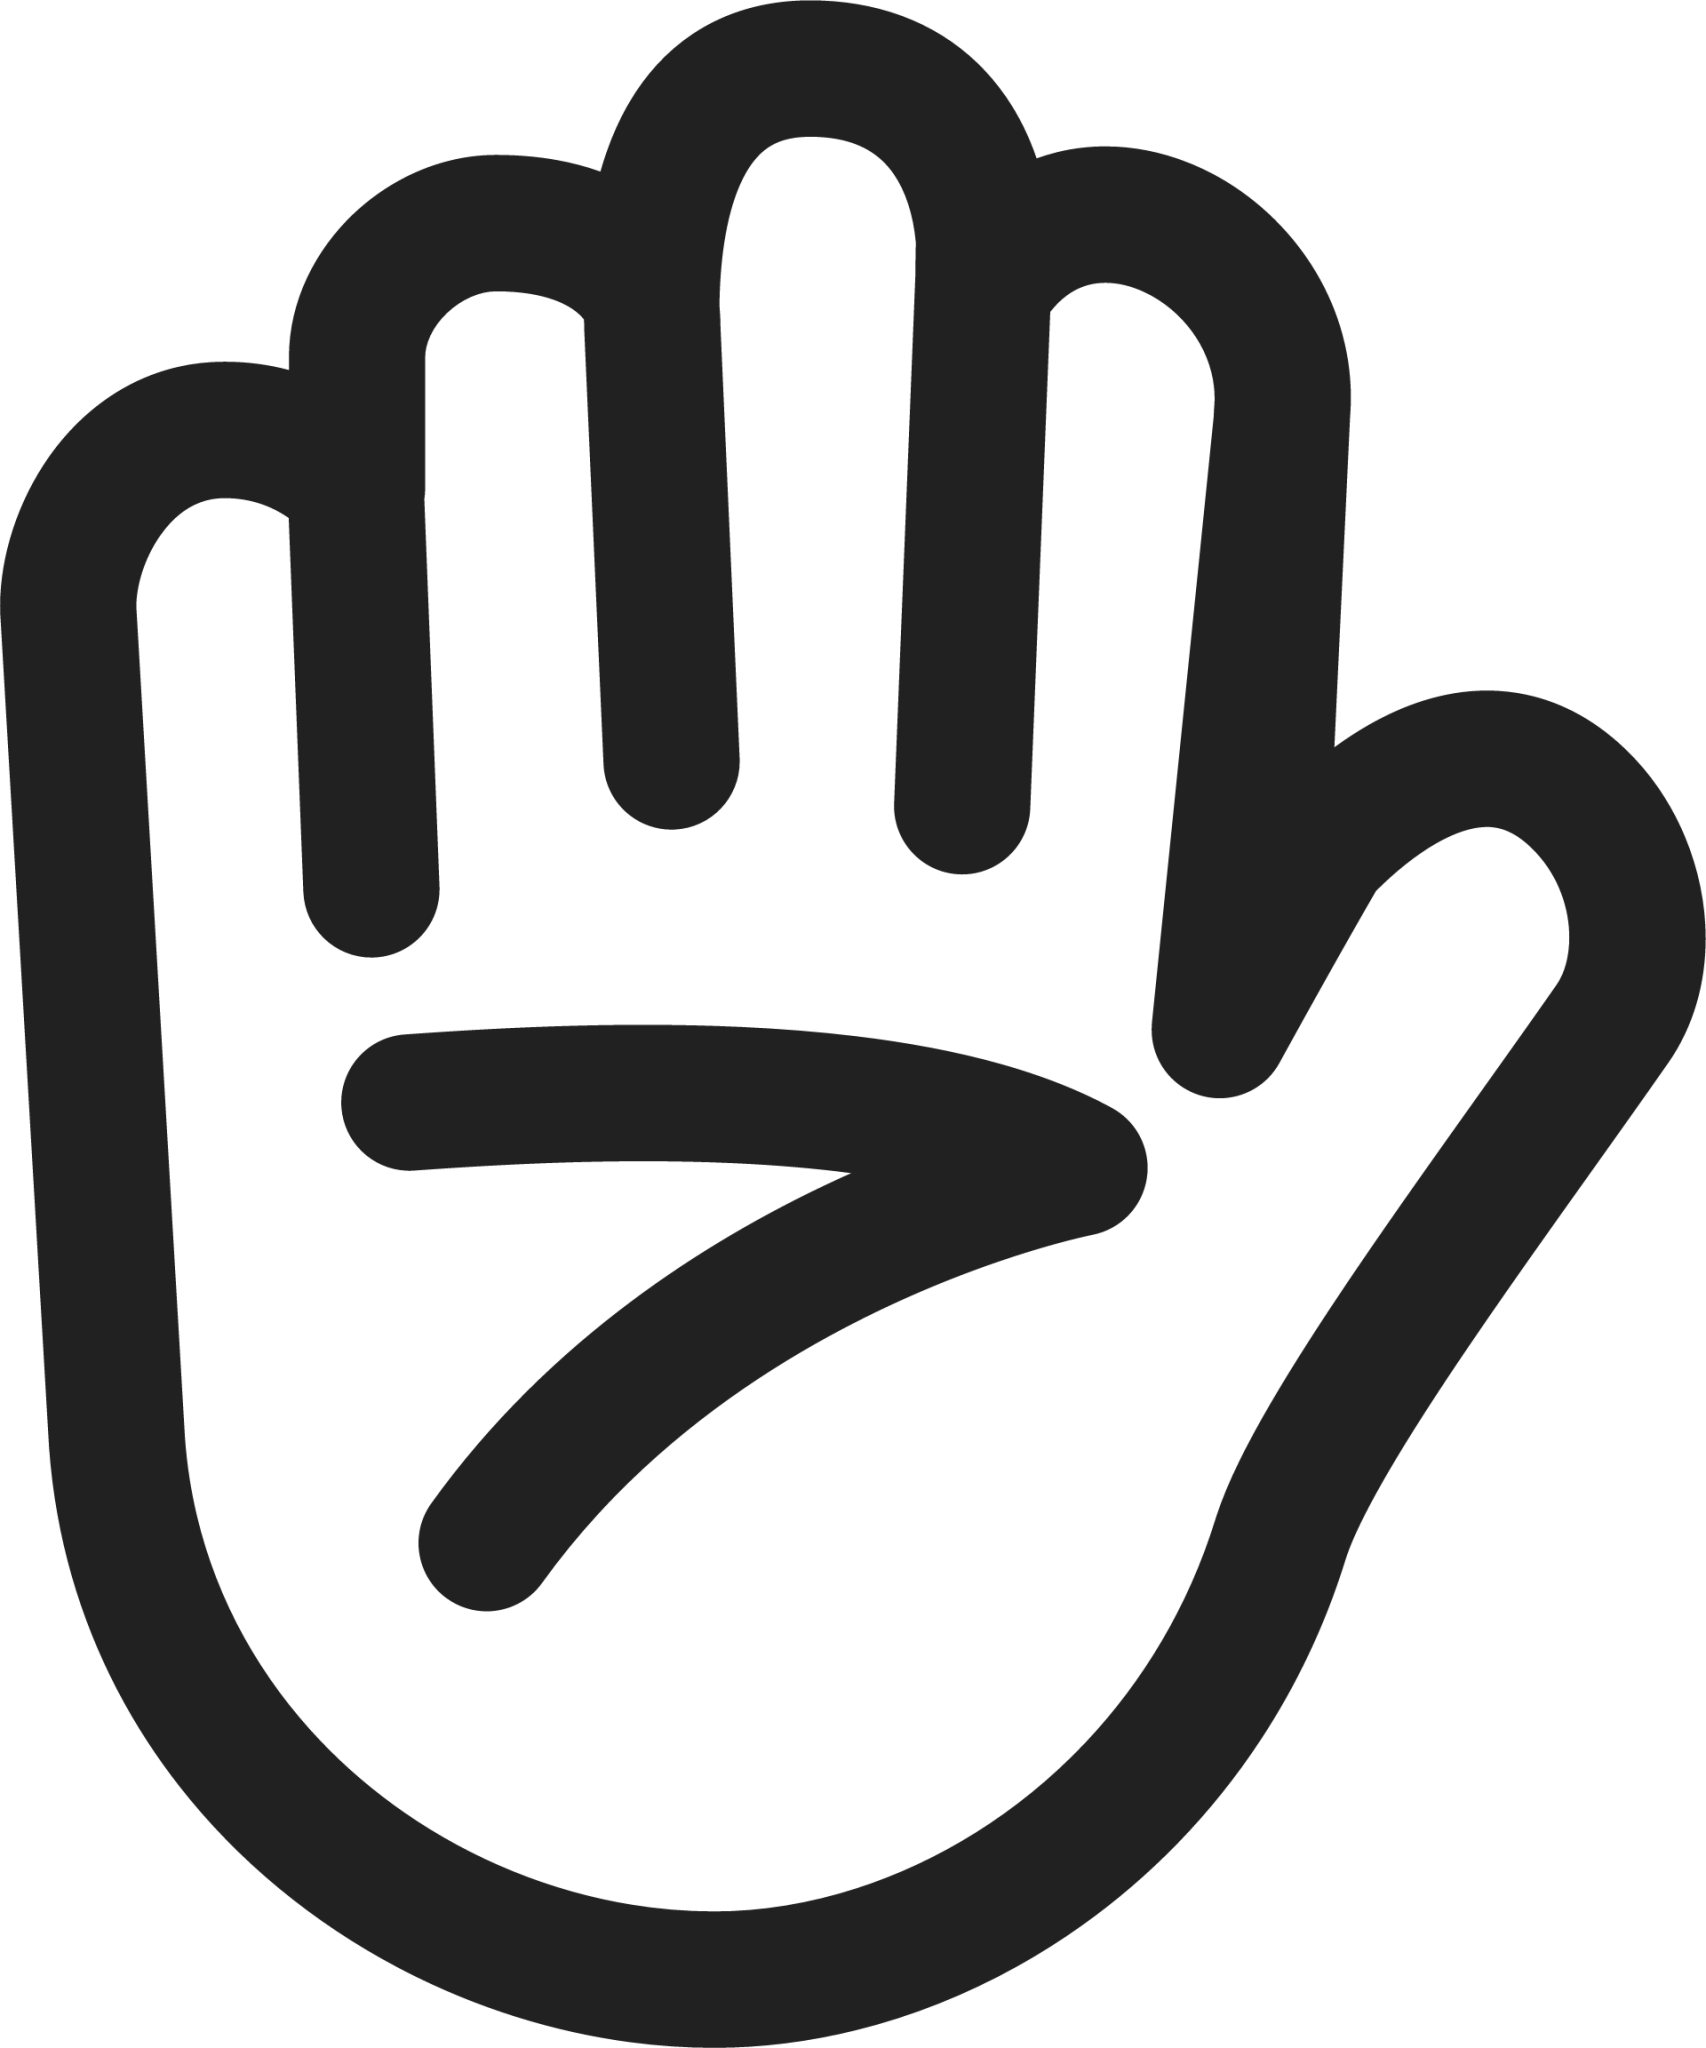 raised hand emoji